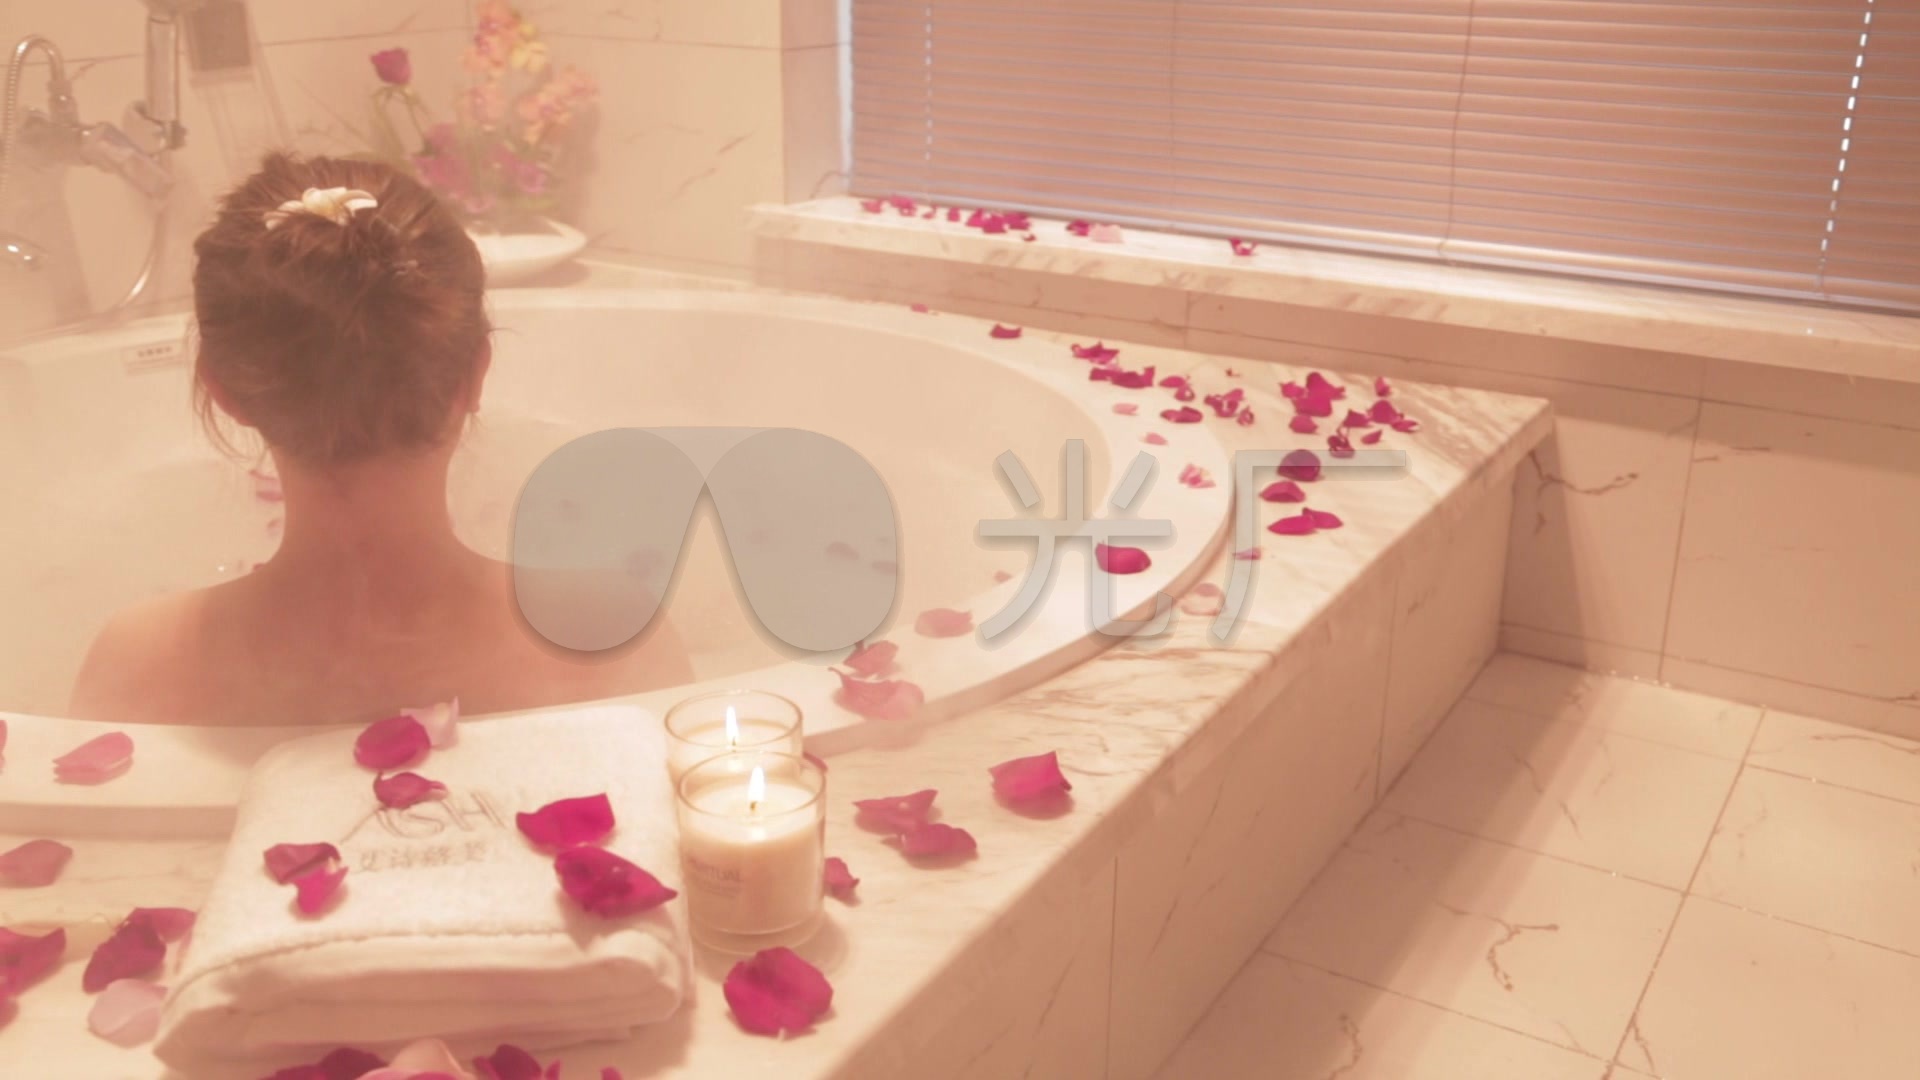 洗浴的放光的妇女在浪漫大气期间 库存照片. 图片 包括有 幻想, 泡沫, 干净, 女性, 浴室, 魅力 - 124770120